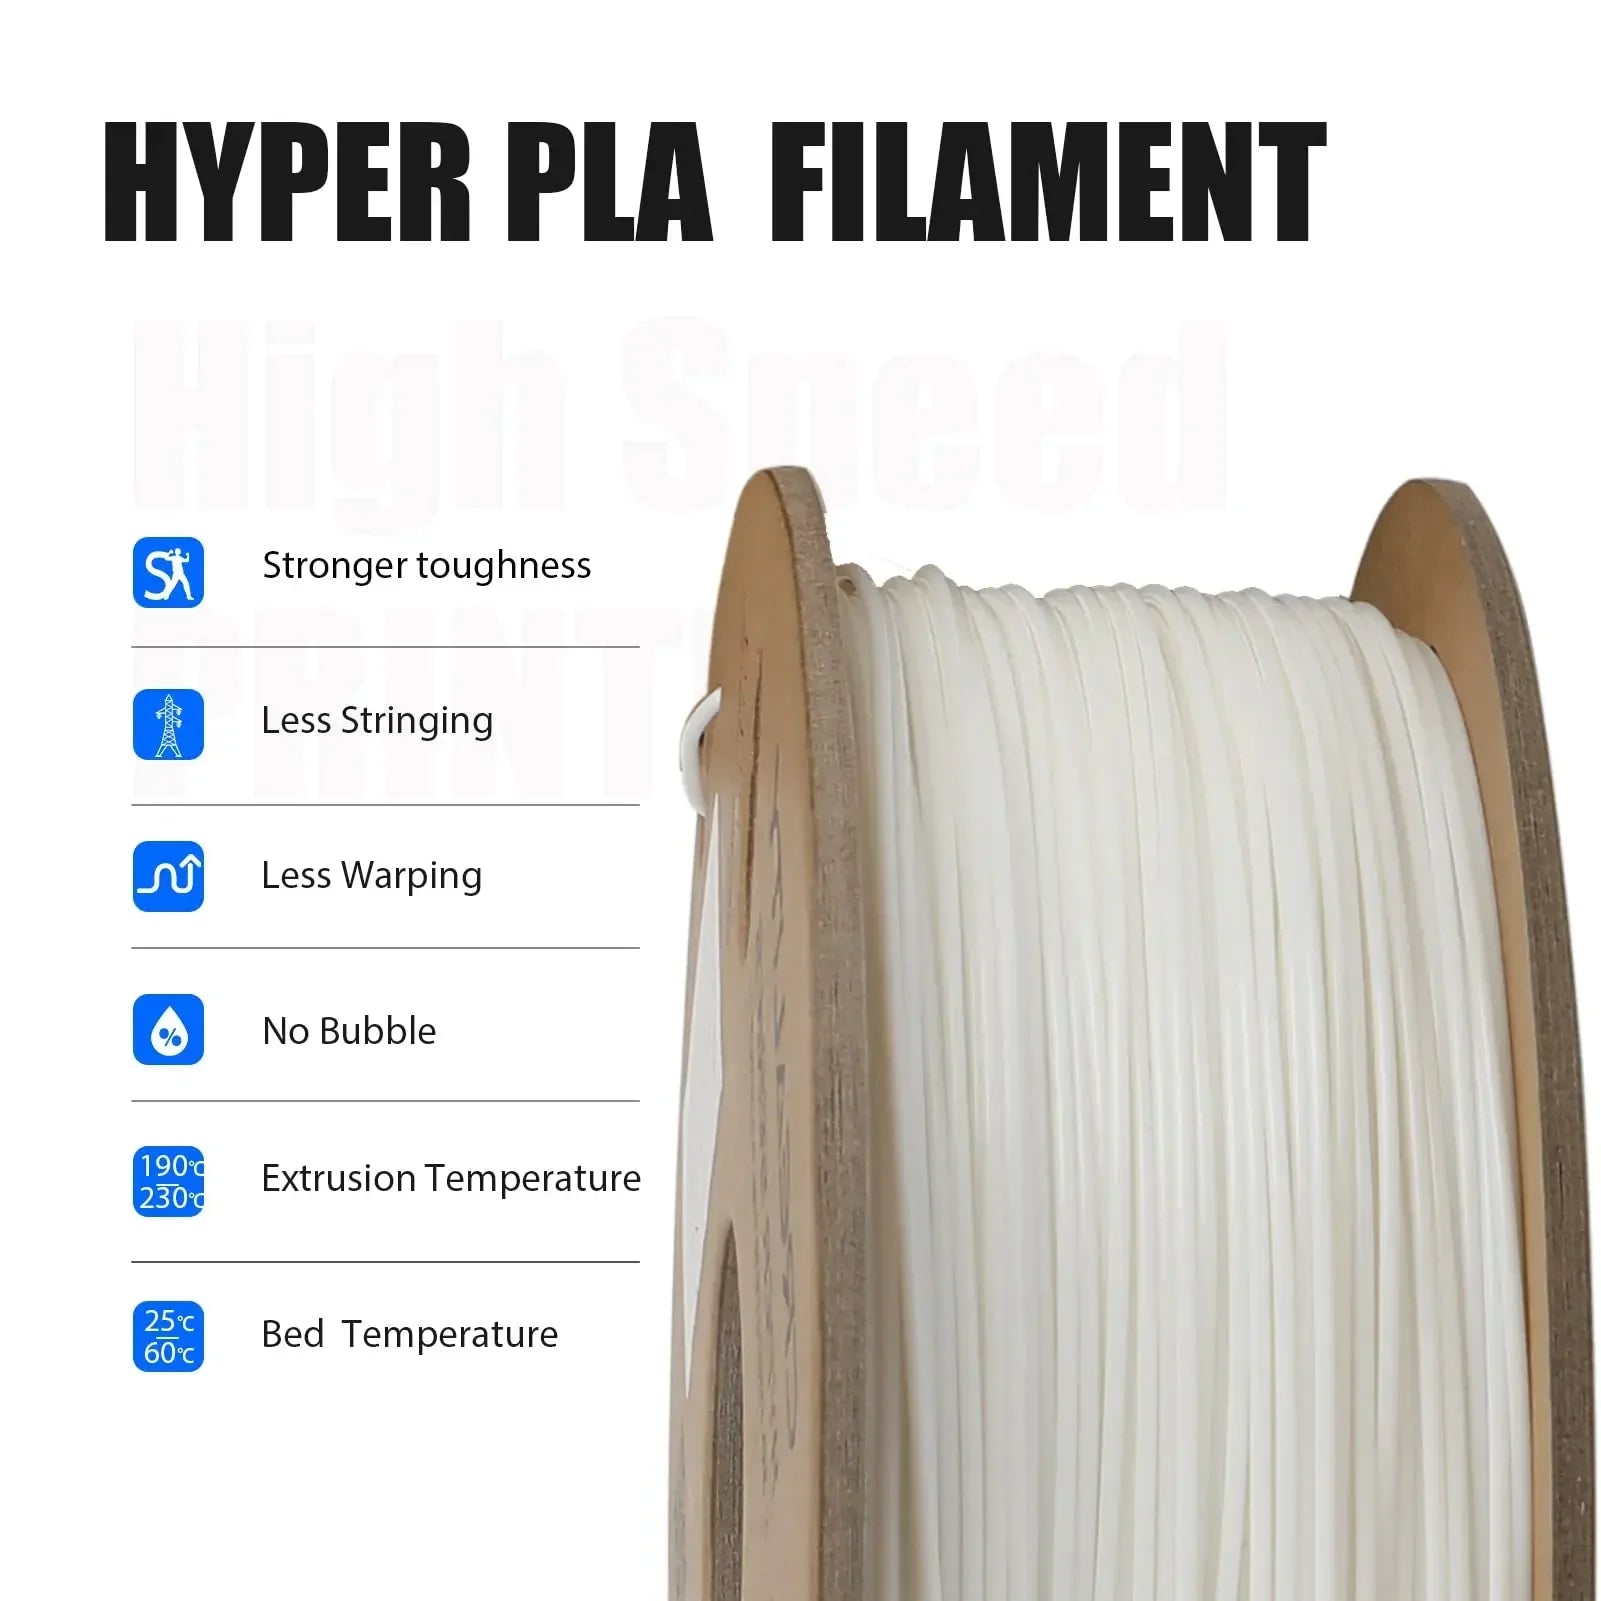 3D Printer Filament, Højhastighedsudskrivning, Dimensionel Nøjagtighed